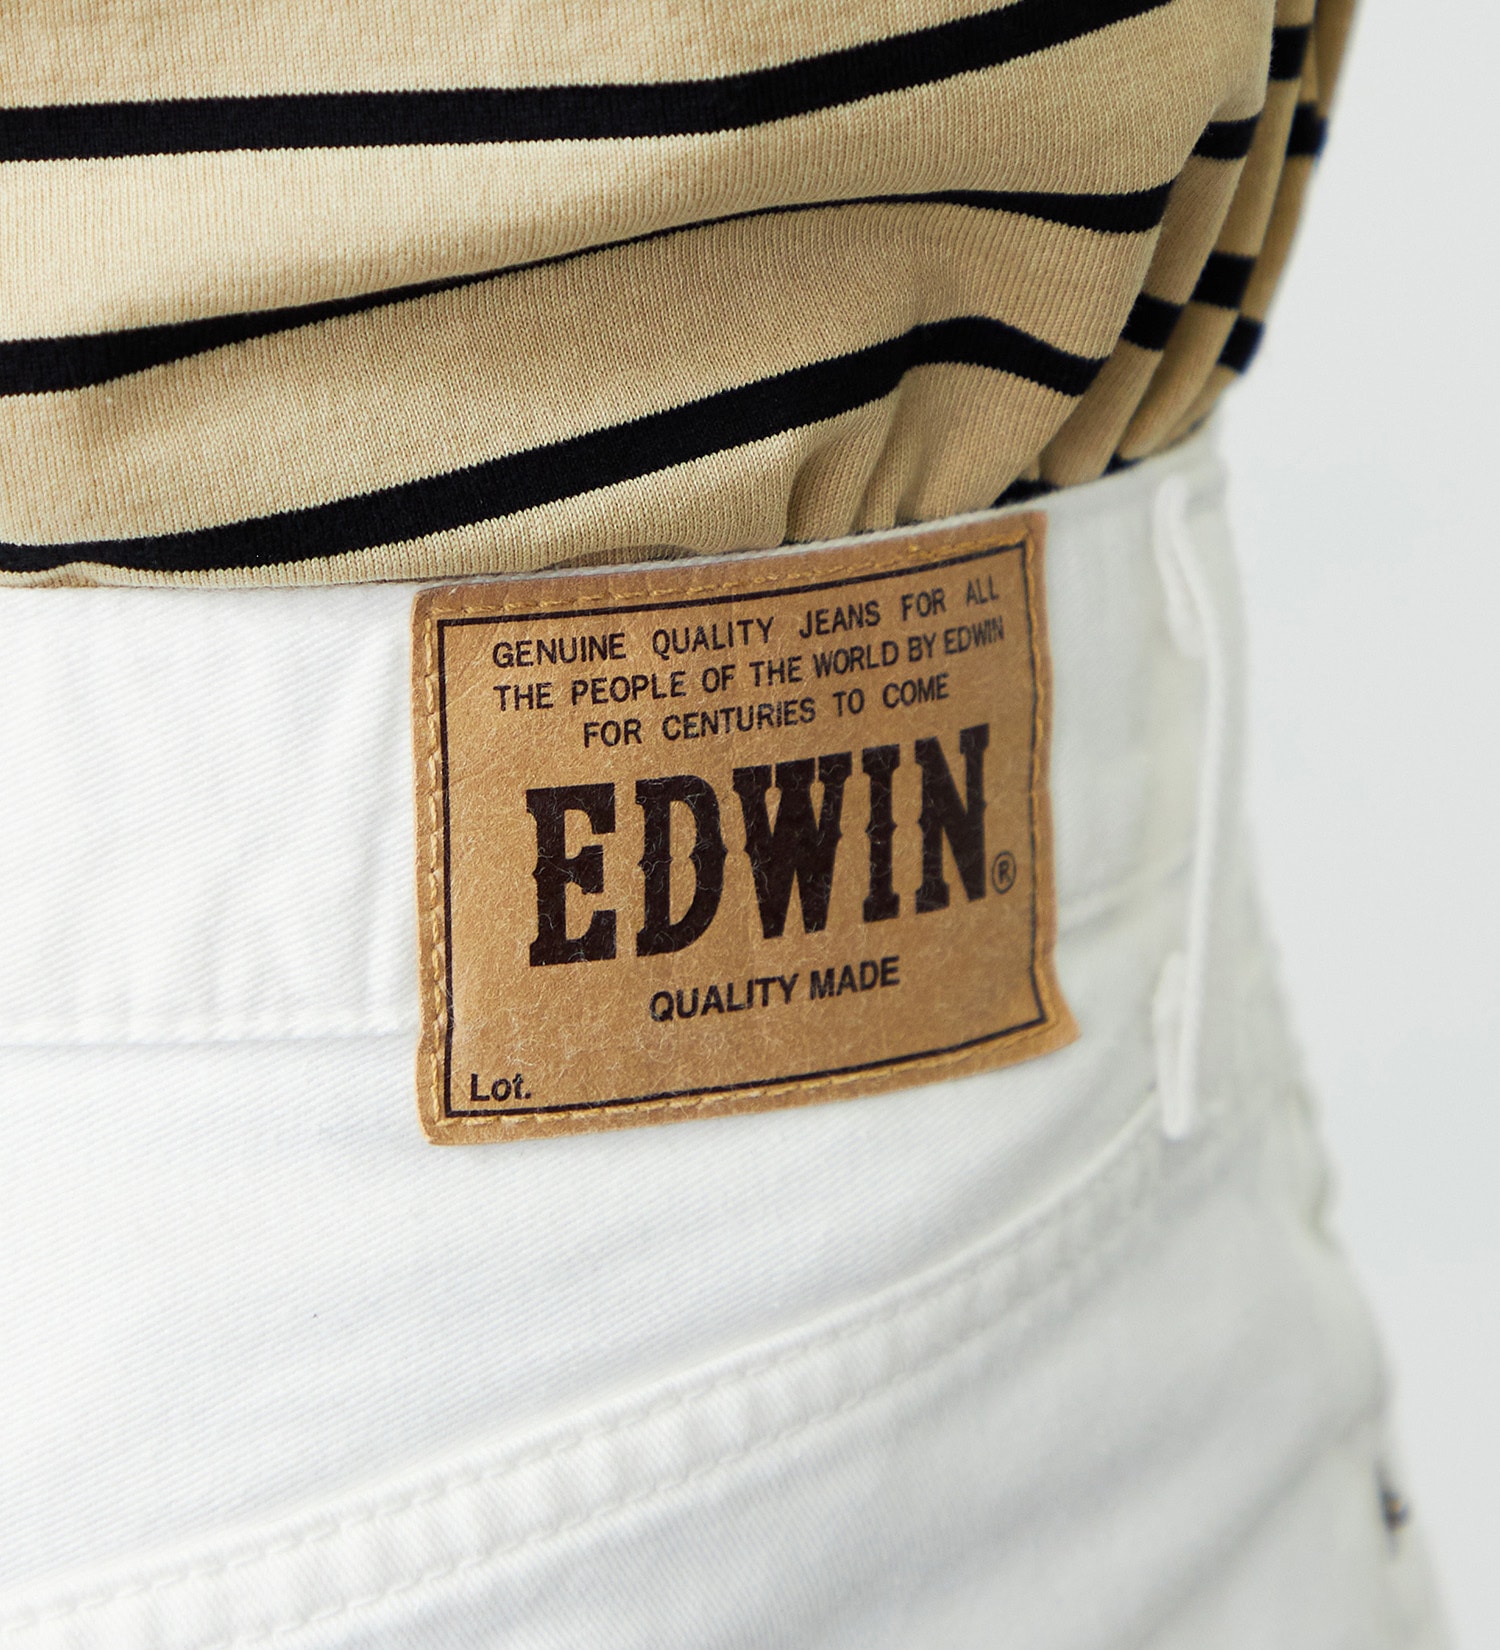 EDWIN(エドウイン)の【ポイントアップ対象】【試着対象】EDWIN BASIC クロップドデニムパンツ|パンツ/ショート丈/メンズ|ホワイト